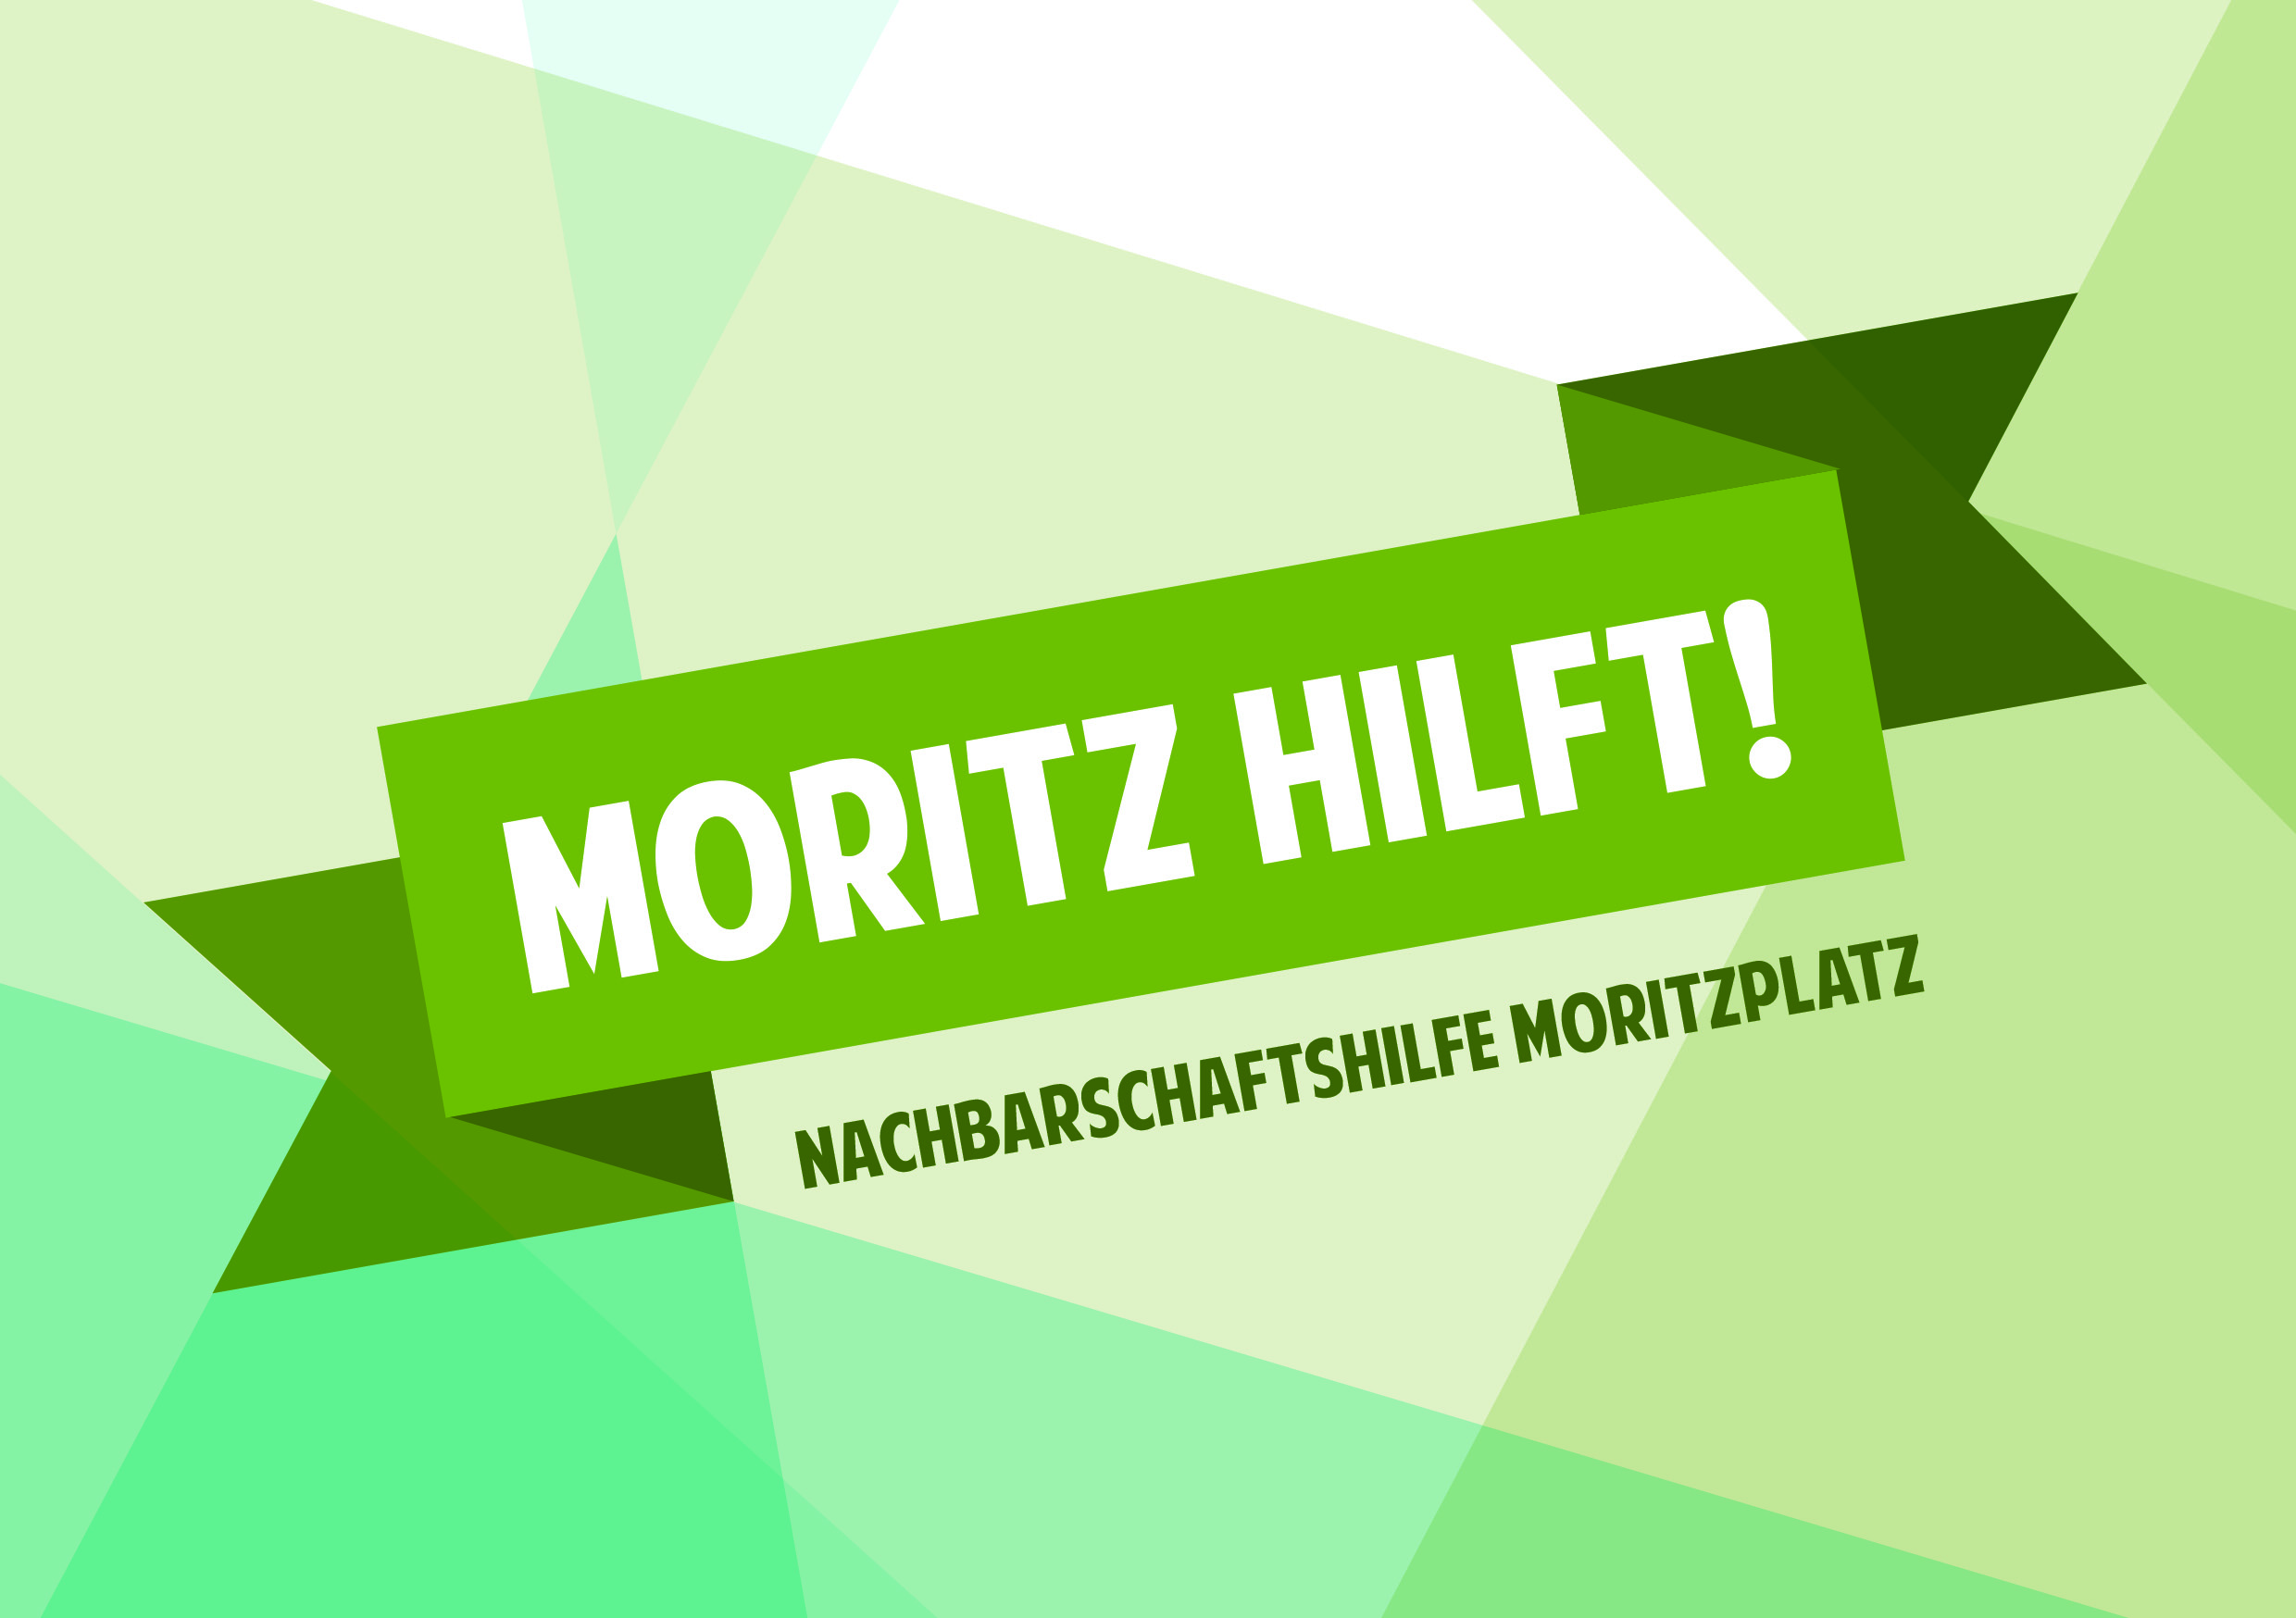 MORITZ HILFT! – Corona-Nachbarschaftshilfe am Moritzplatz in Moritzplatz gegründet